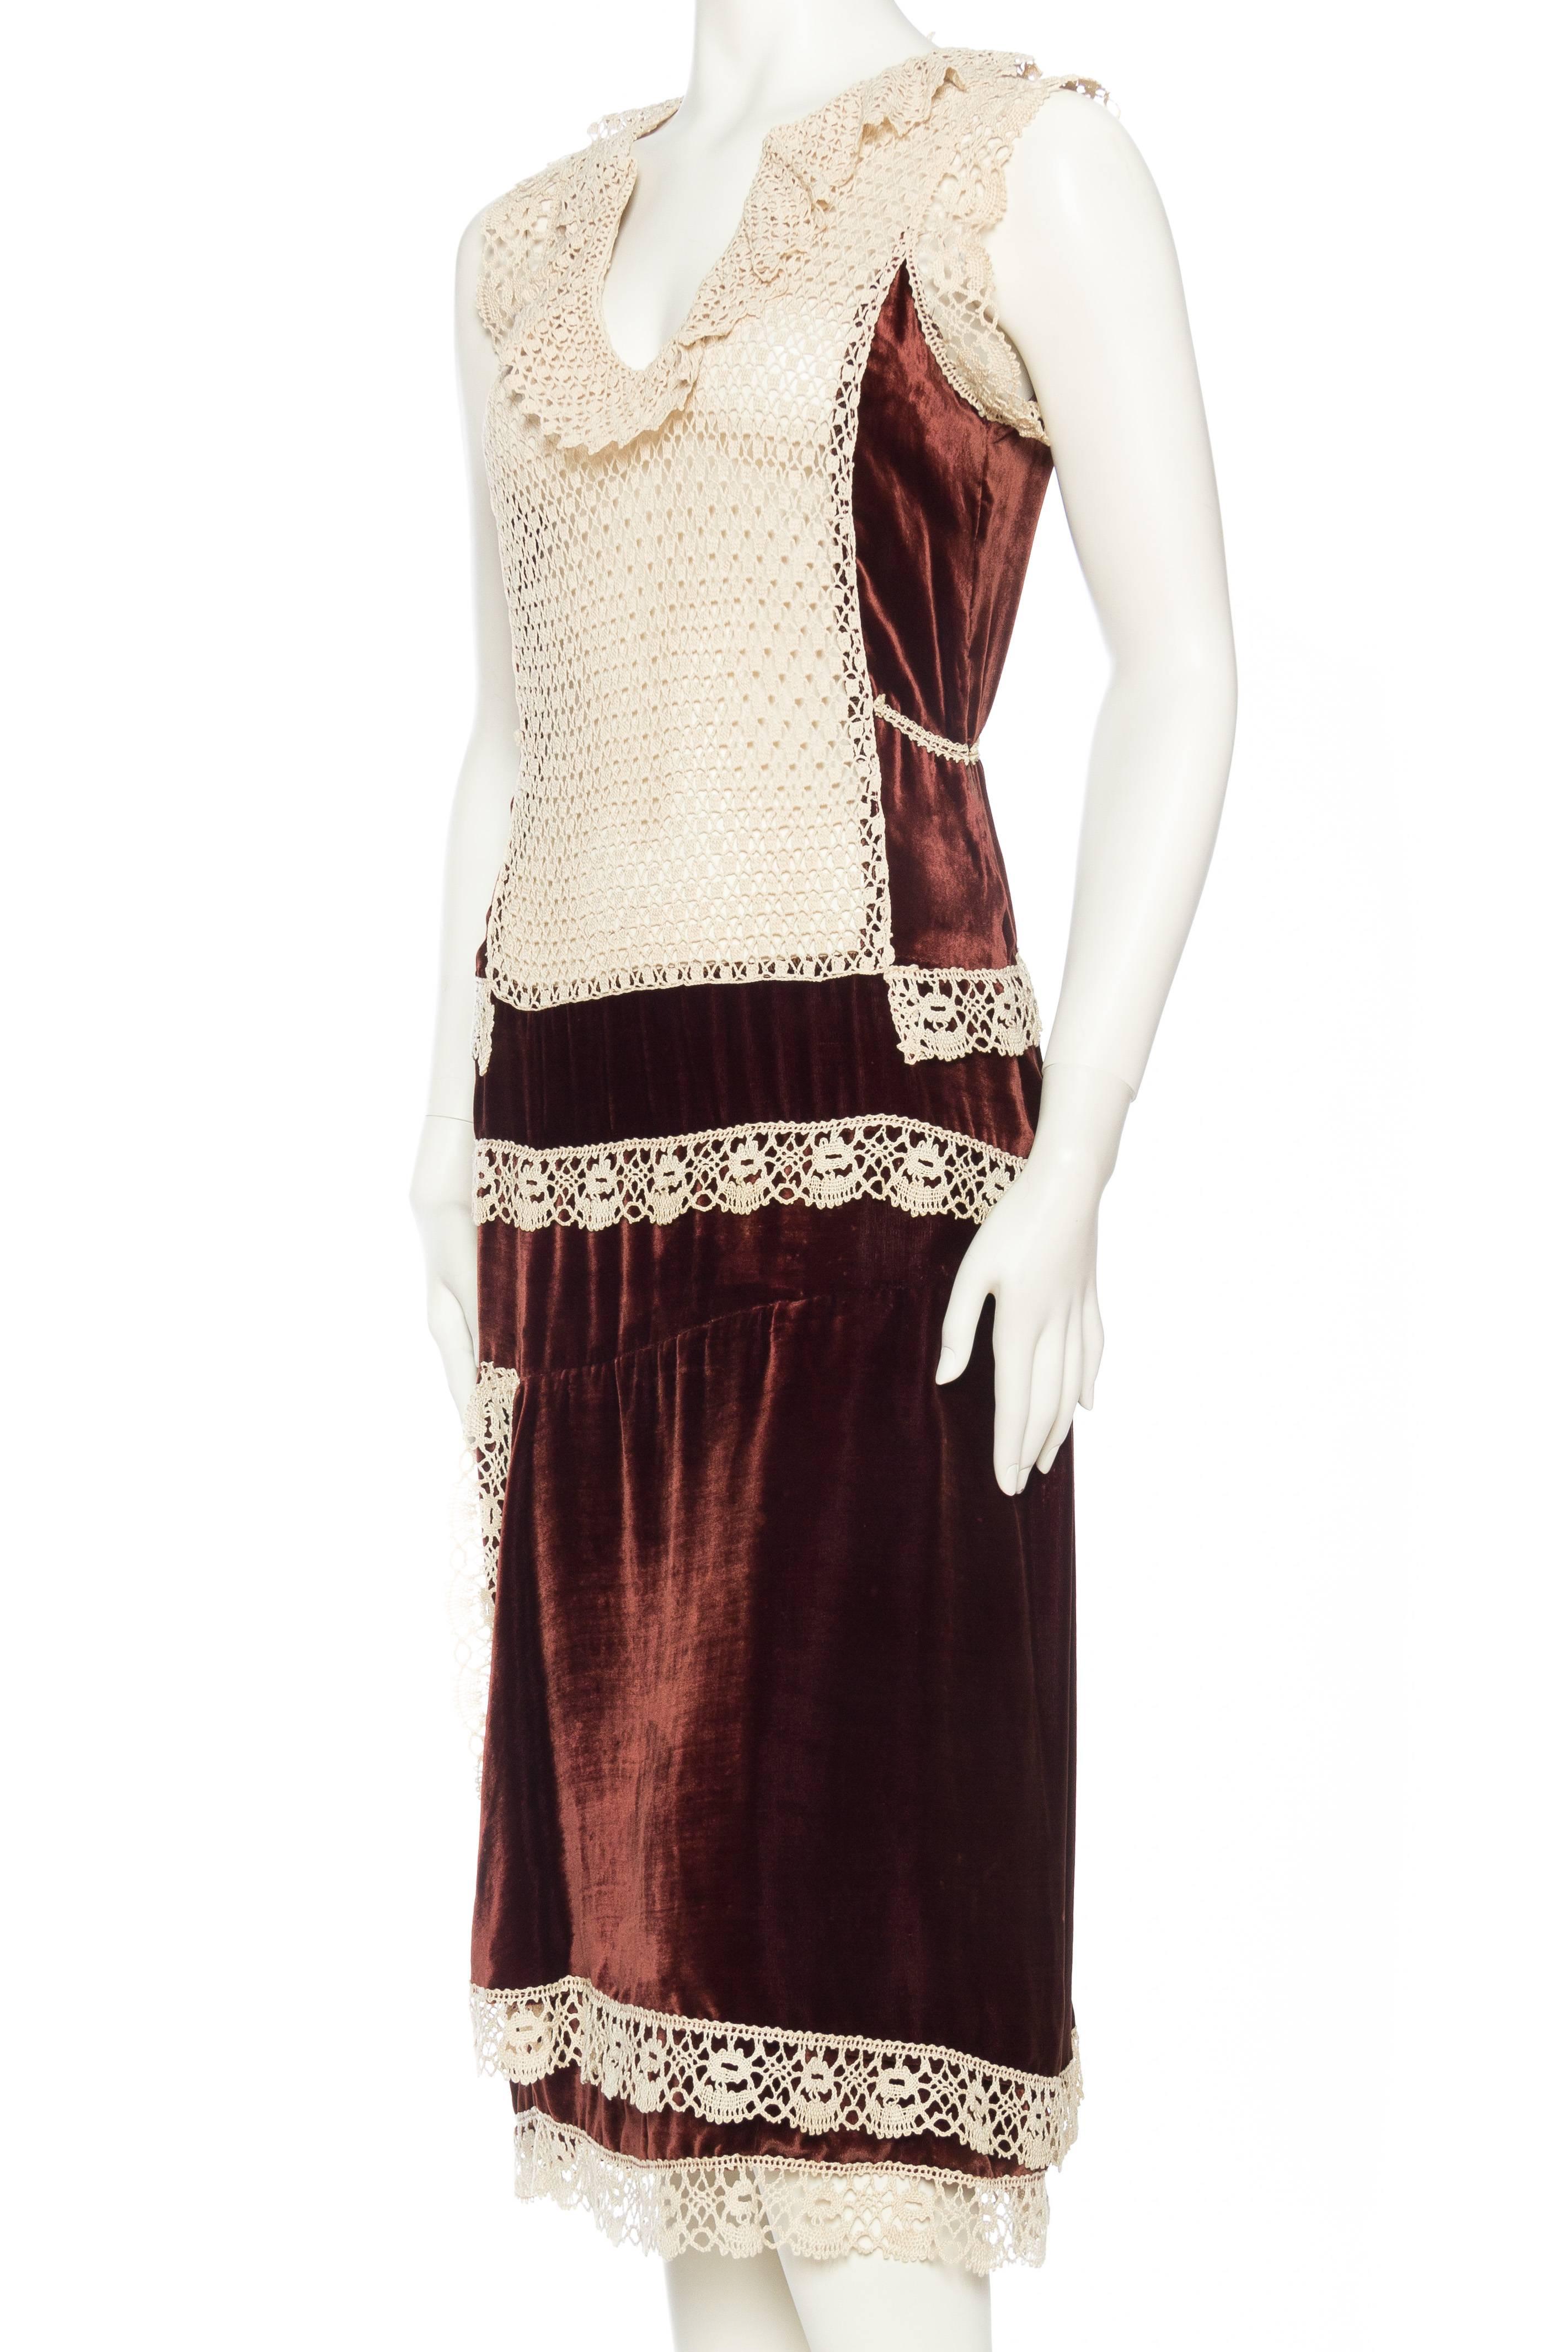 Women's 1920s Silk Velvet Dress with Hand Crochet Lace